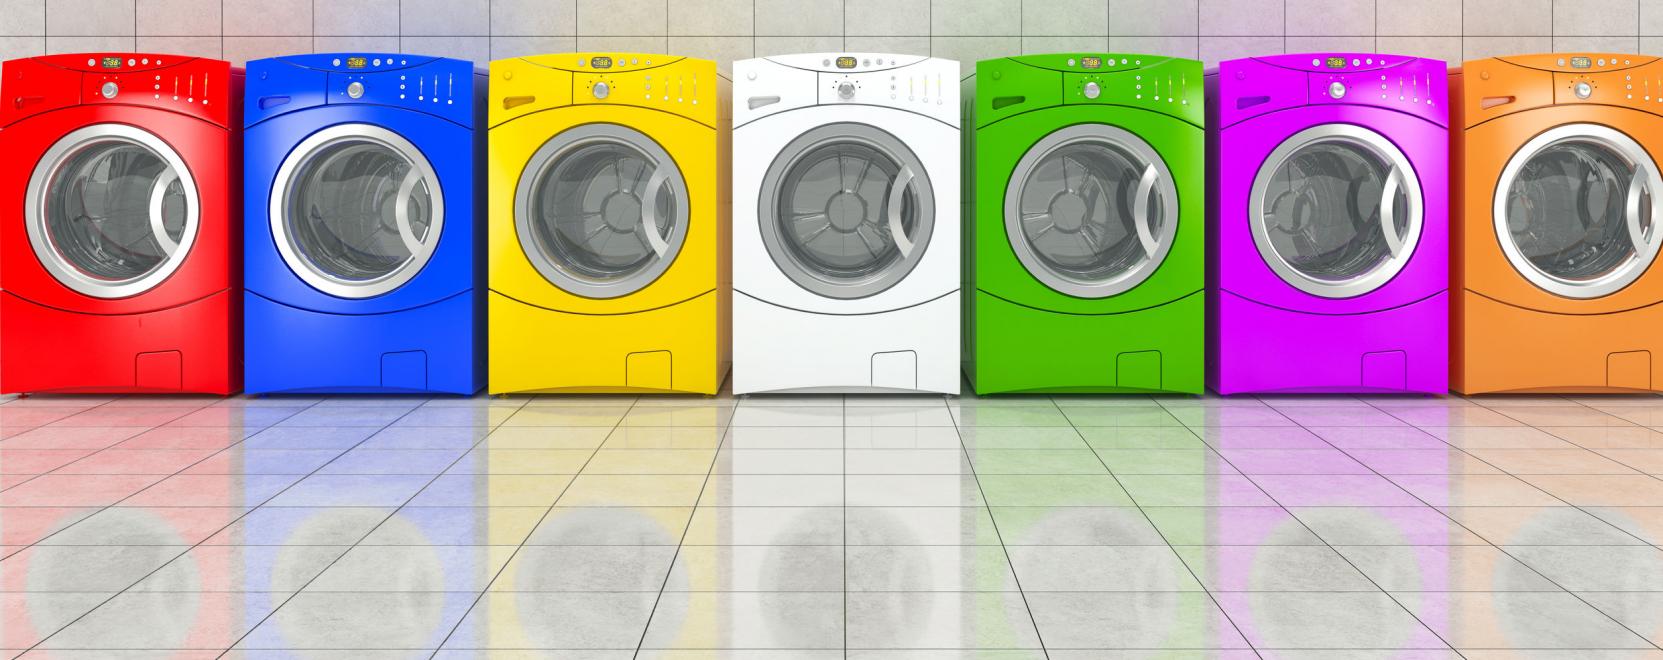 Intelligens szennyestartó teheti egyszerűbbé a mosást